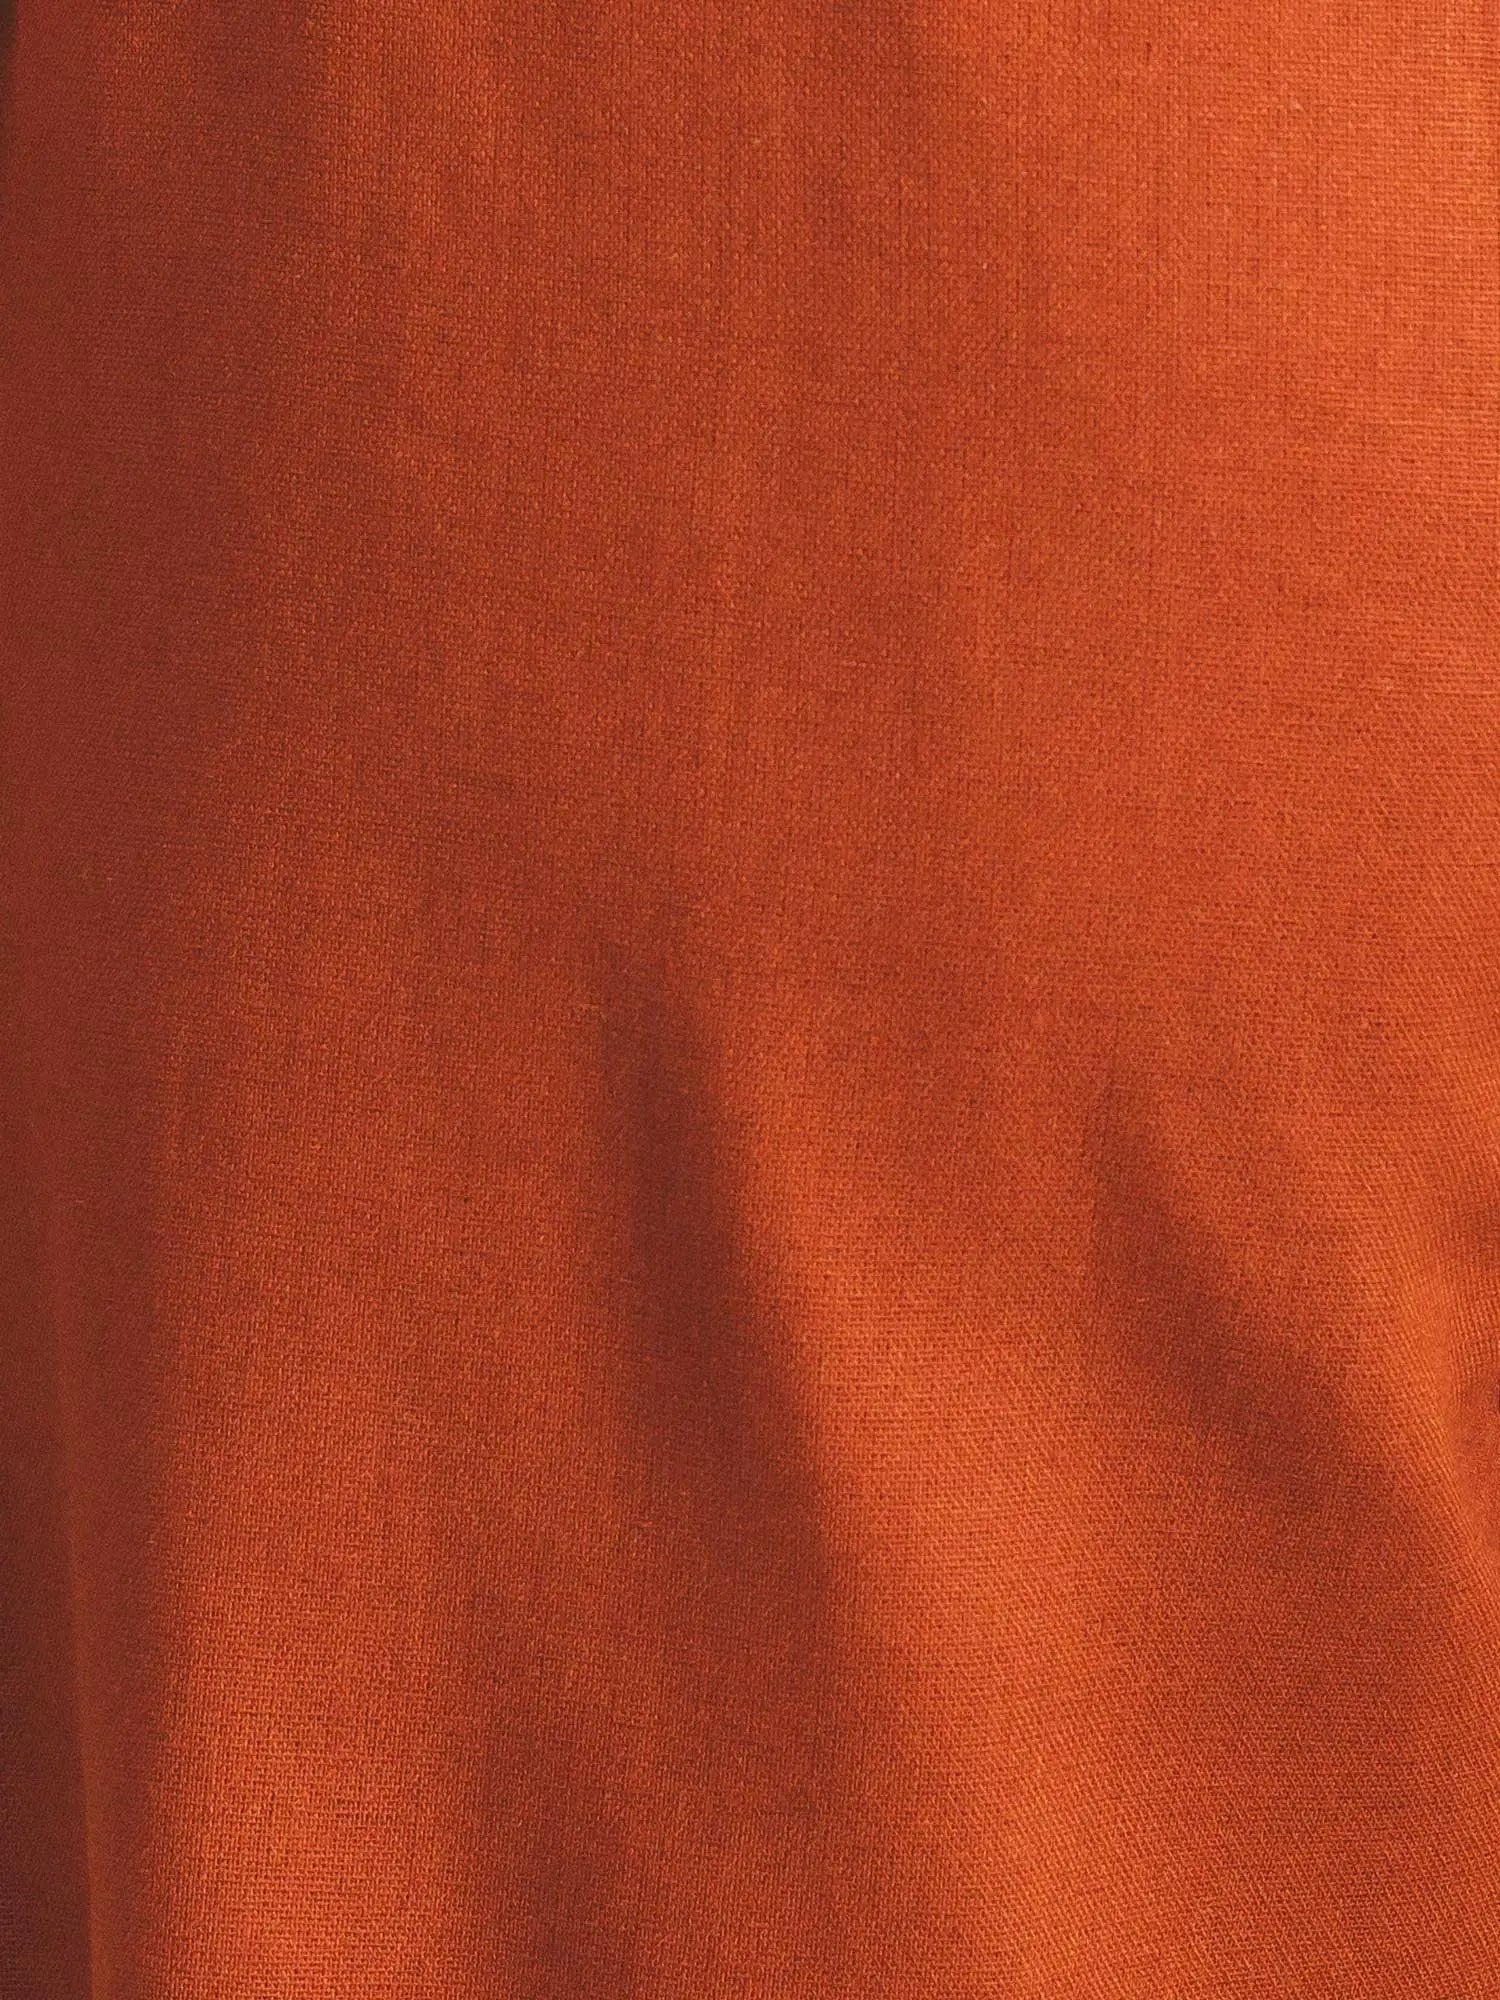 Calça Pantalona de Alfaiataria em Linho e Viscose FSC™ Marrom Terracota. Compre online moda sustentável e atemporal na Minimadeia. Roupas femininas estilosas, básicas e sustentáveis. Foto produto 11